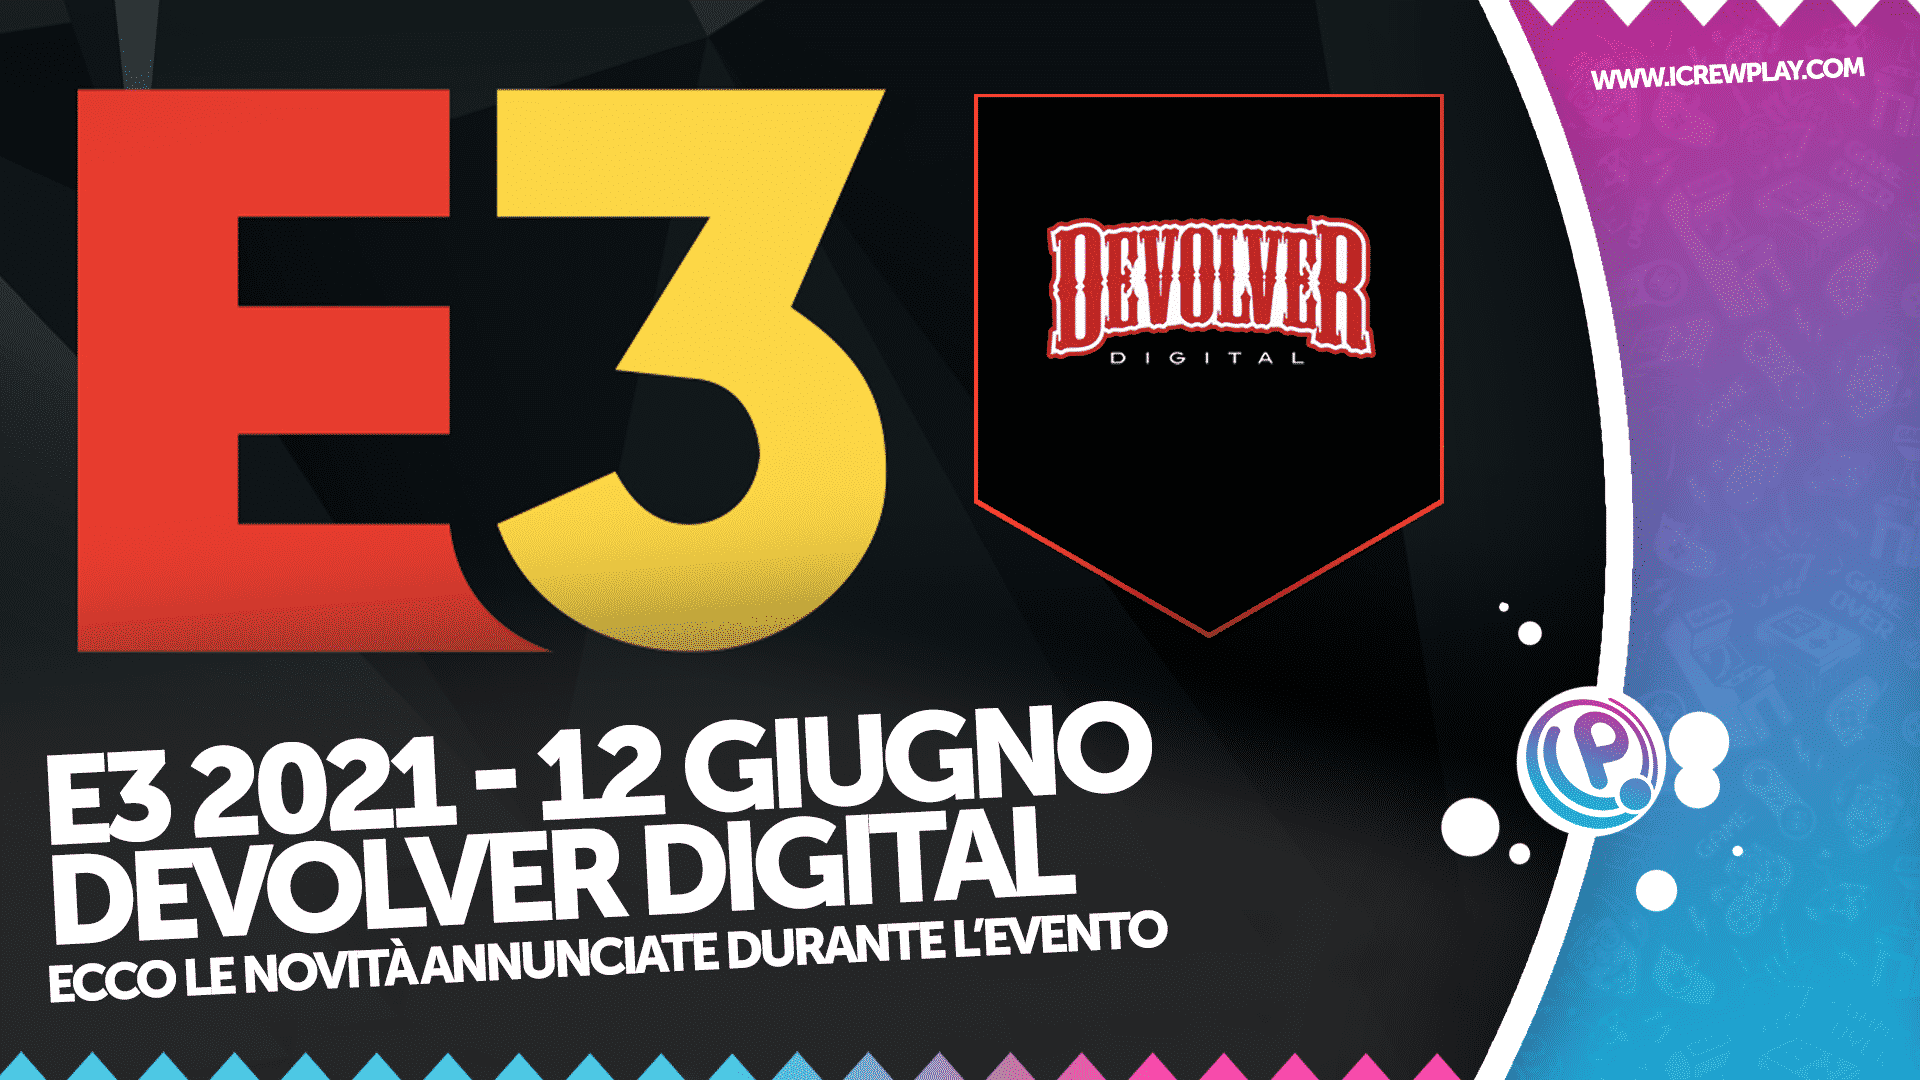 E3 2021, Devolver Digital, E3 2021 Devolver Digital, Devolver Digital Annunci, Giochi Devolver Digital